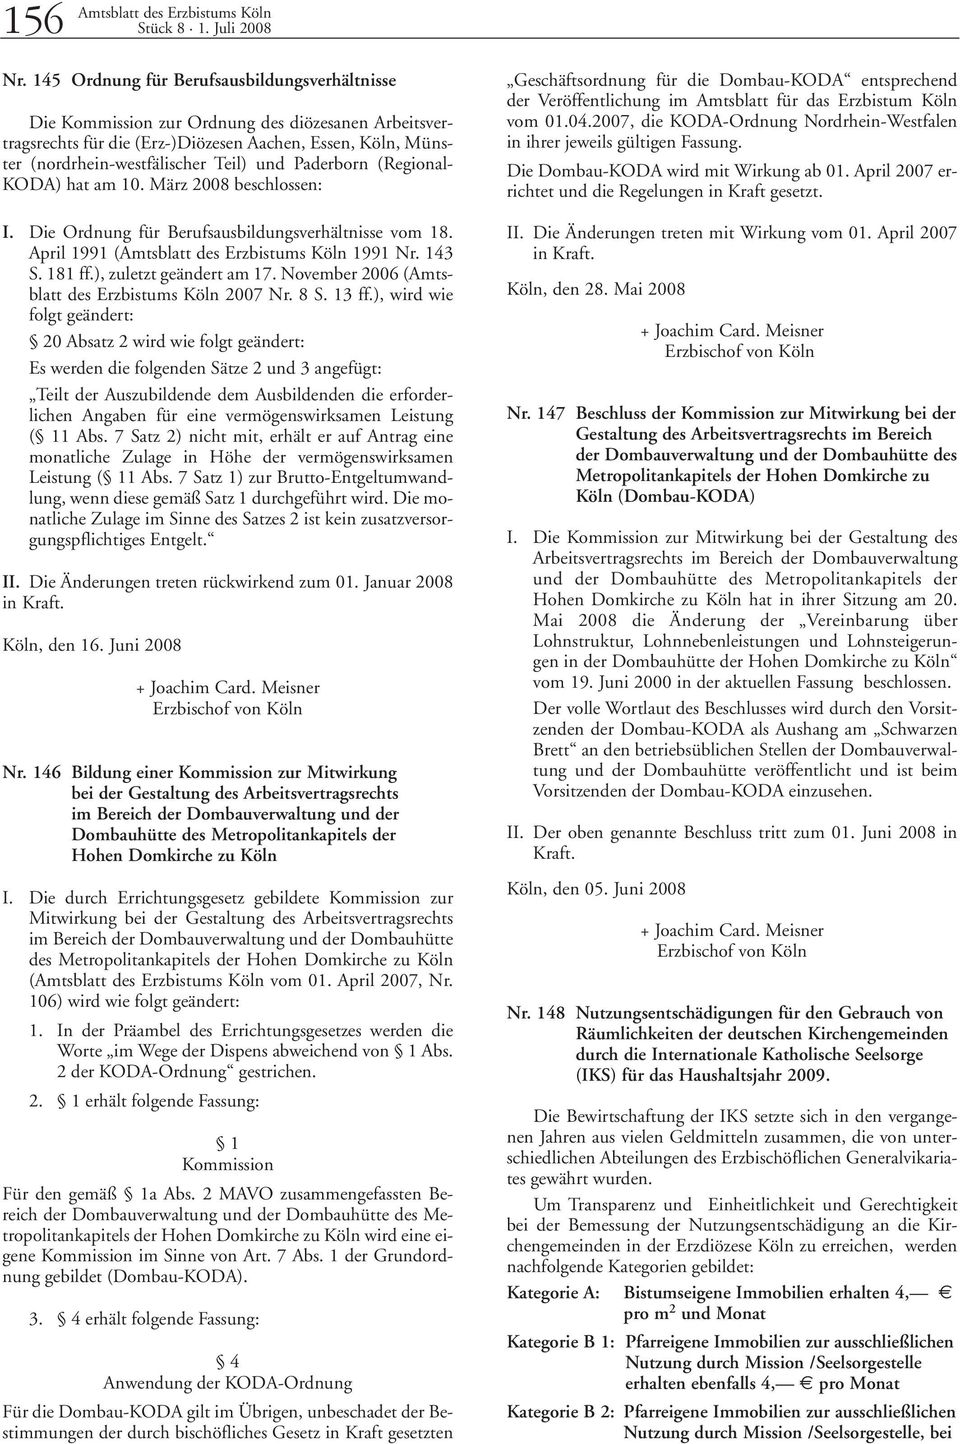 Paderborn (Regional- KODA) hat am 10. März 2008 beschlossen: I. Die Ordnung für Berufsausbildungsverhältnisse vom 18. April 1991 (Amtsblatt des Erzbistums Köln 1991 Nr. 143 S. 181 ff.